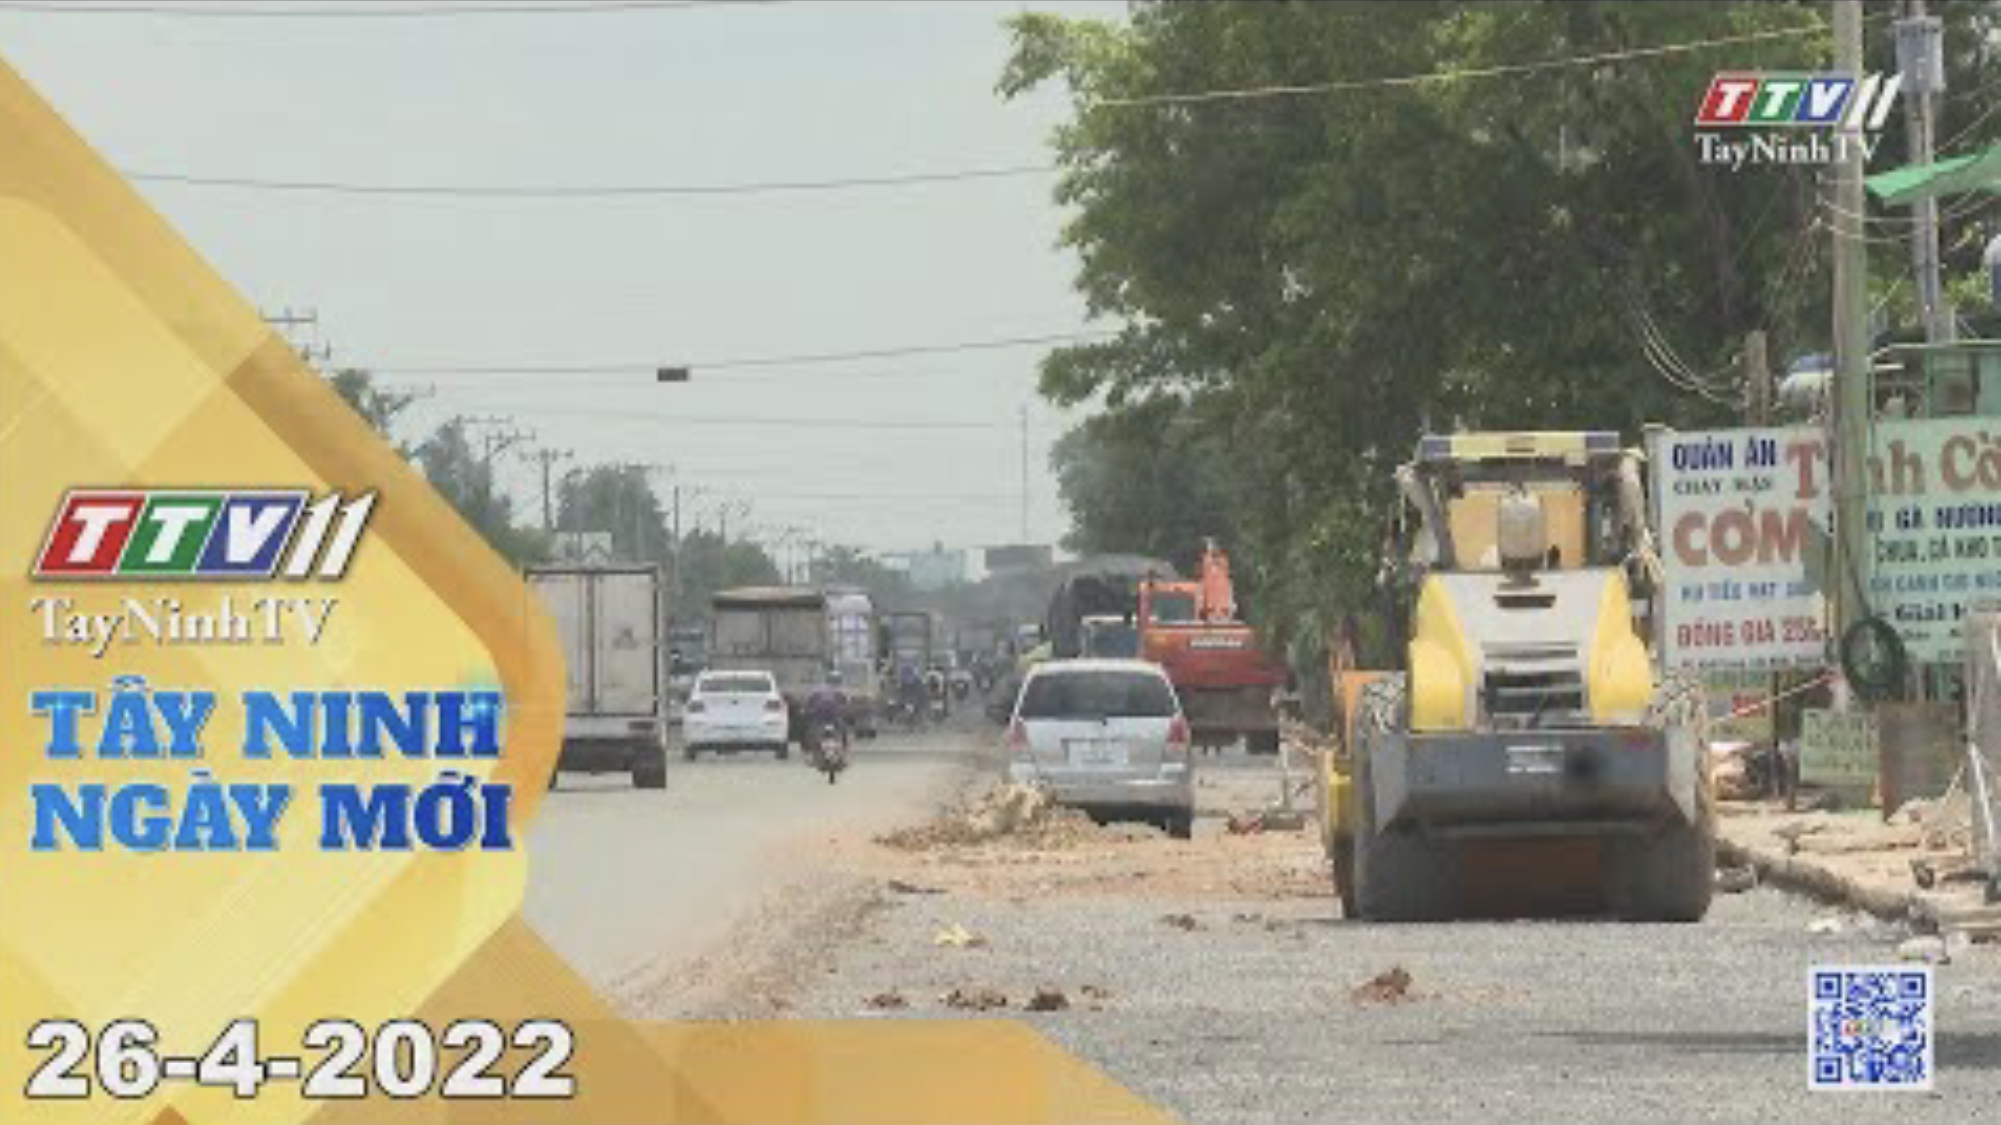 Tây Ninh ngày mới 26-4-2022 | Tin tức hôm nay | TayNinhTV